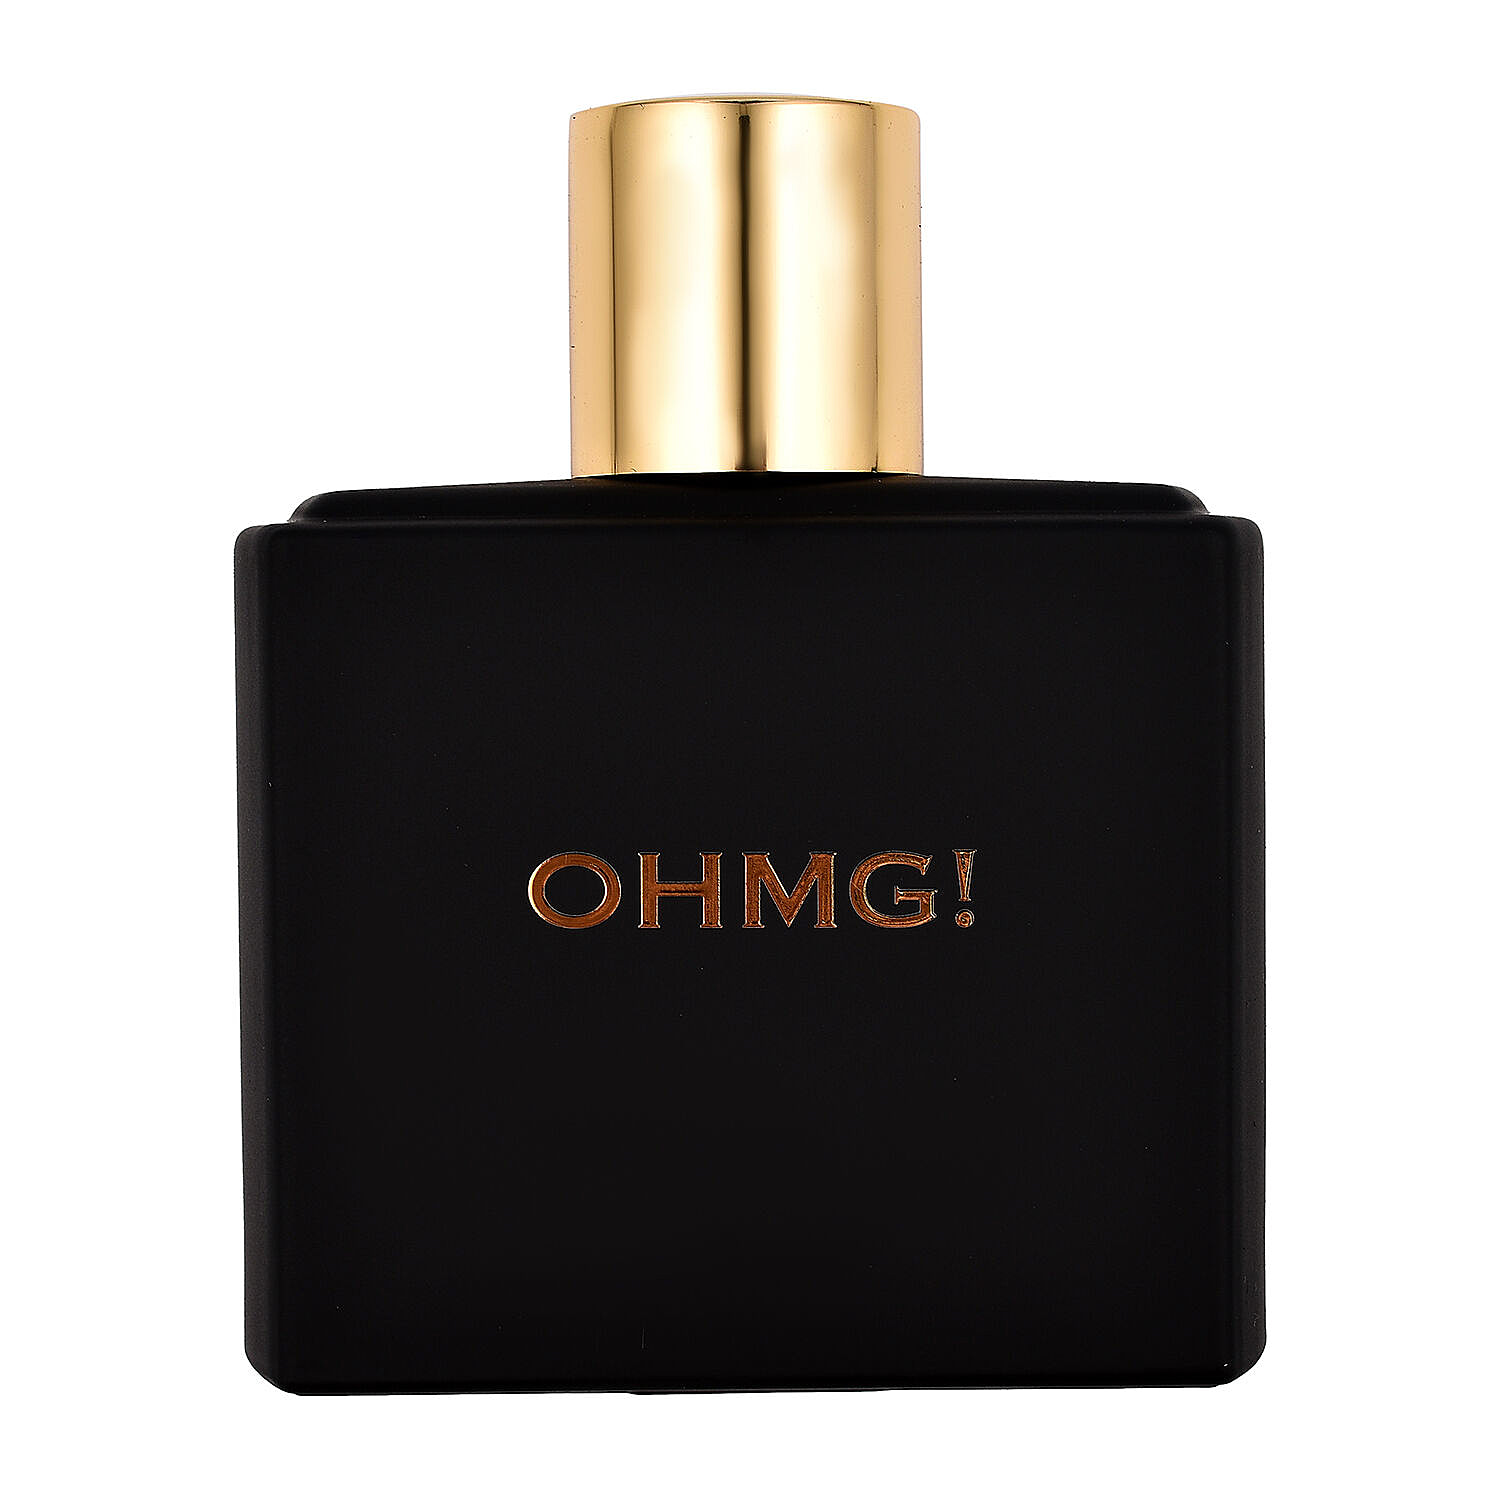 OhMG! Oud Eau De Parfum - 100ml - For Her and Him 